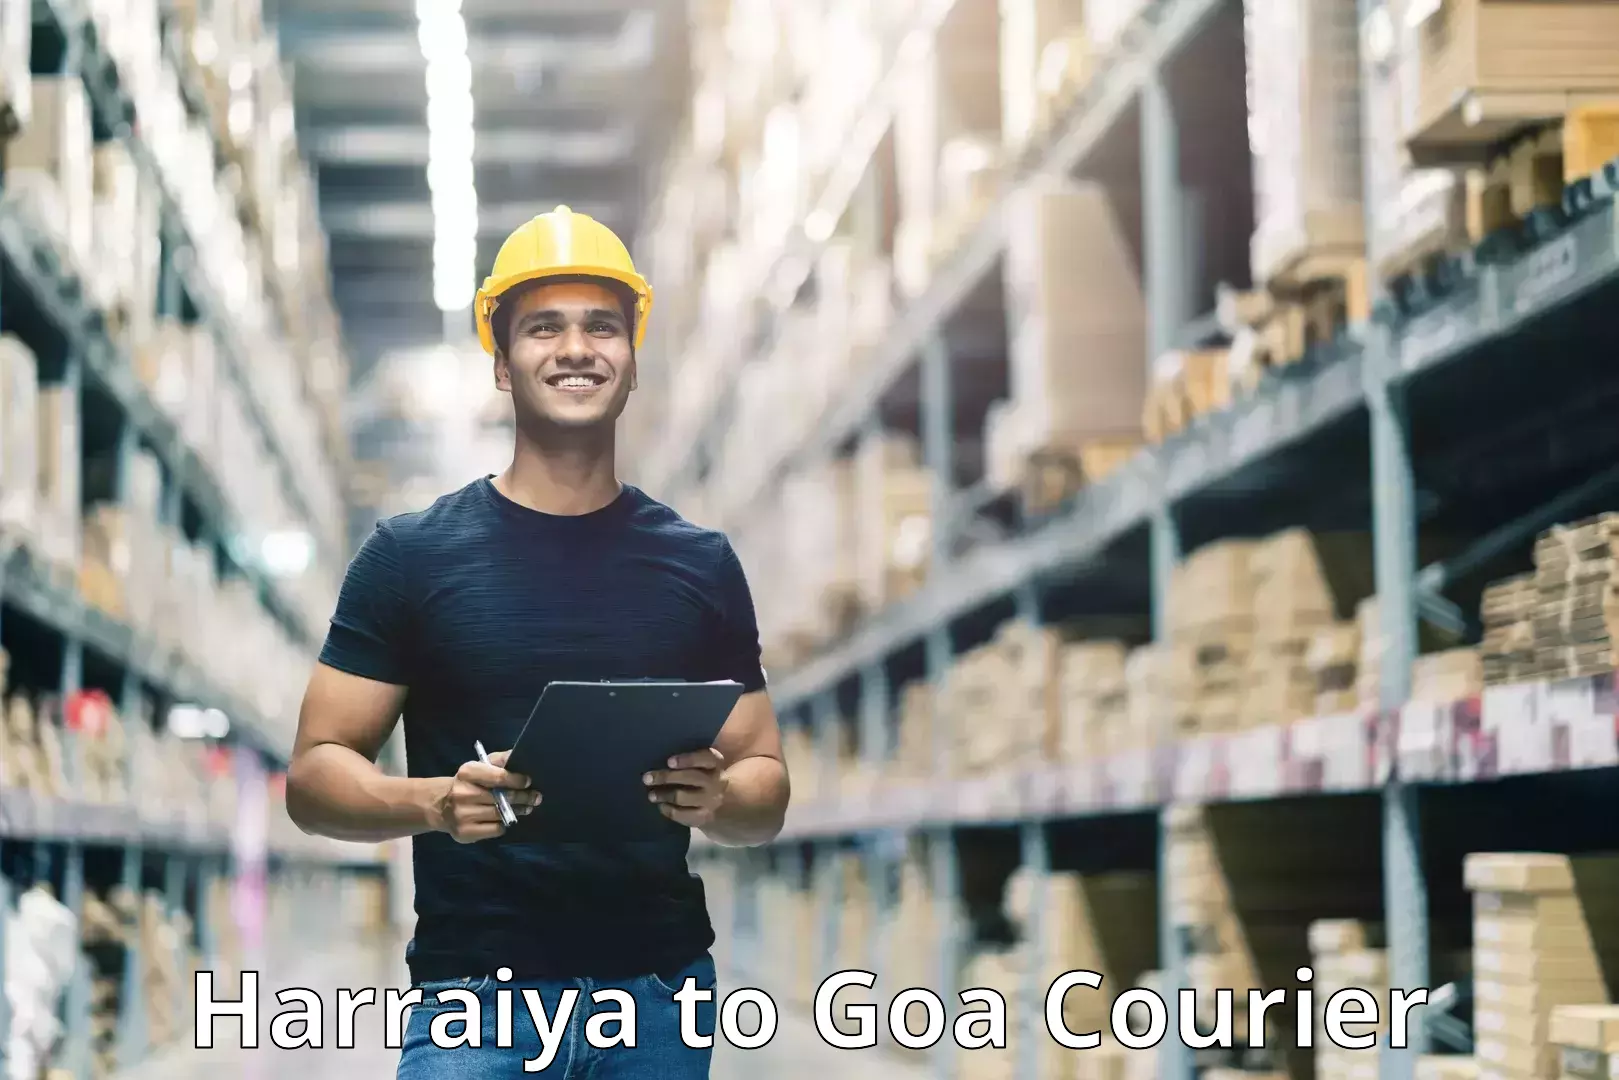 Efficient order fulfillment Harraiya to IIT Goa